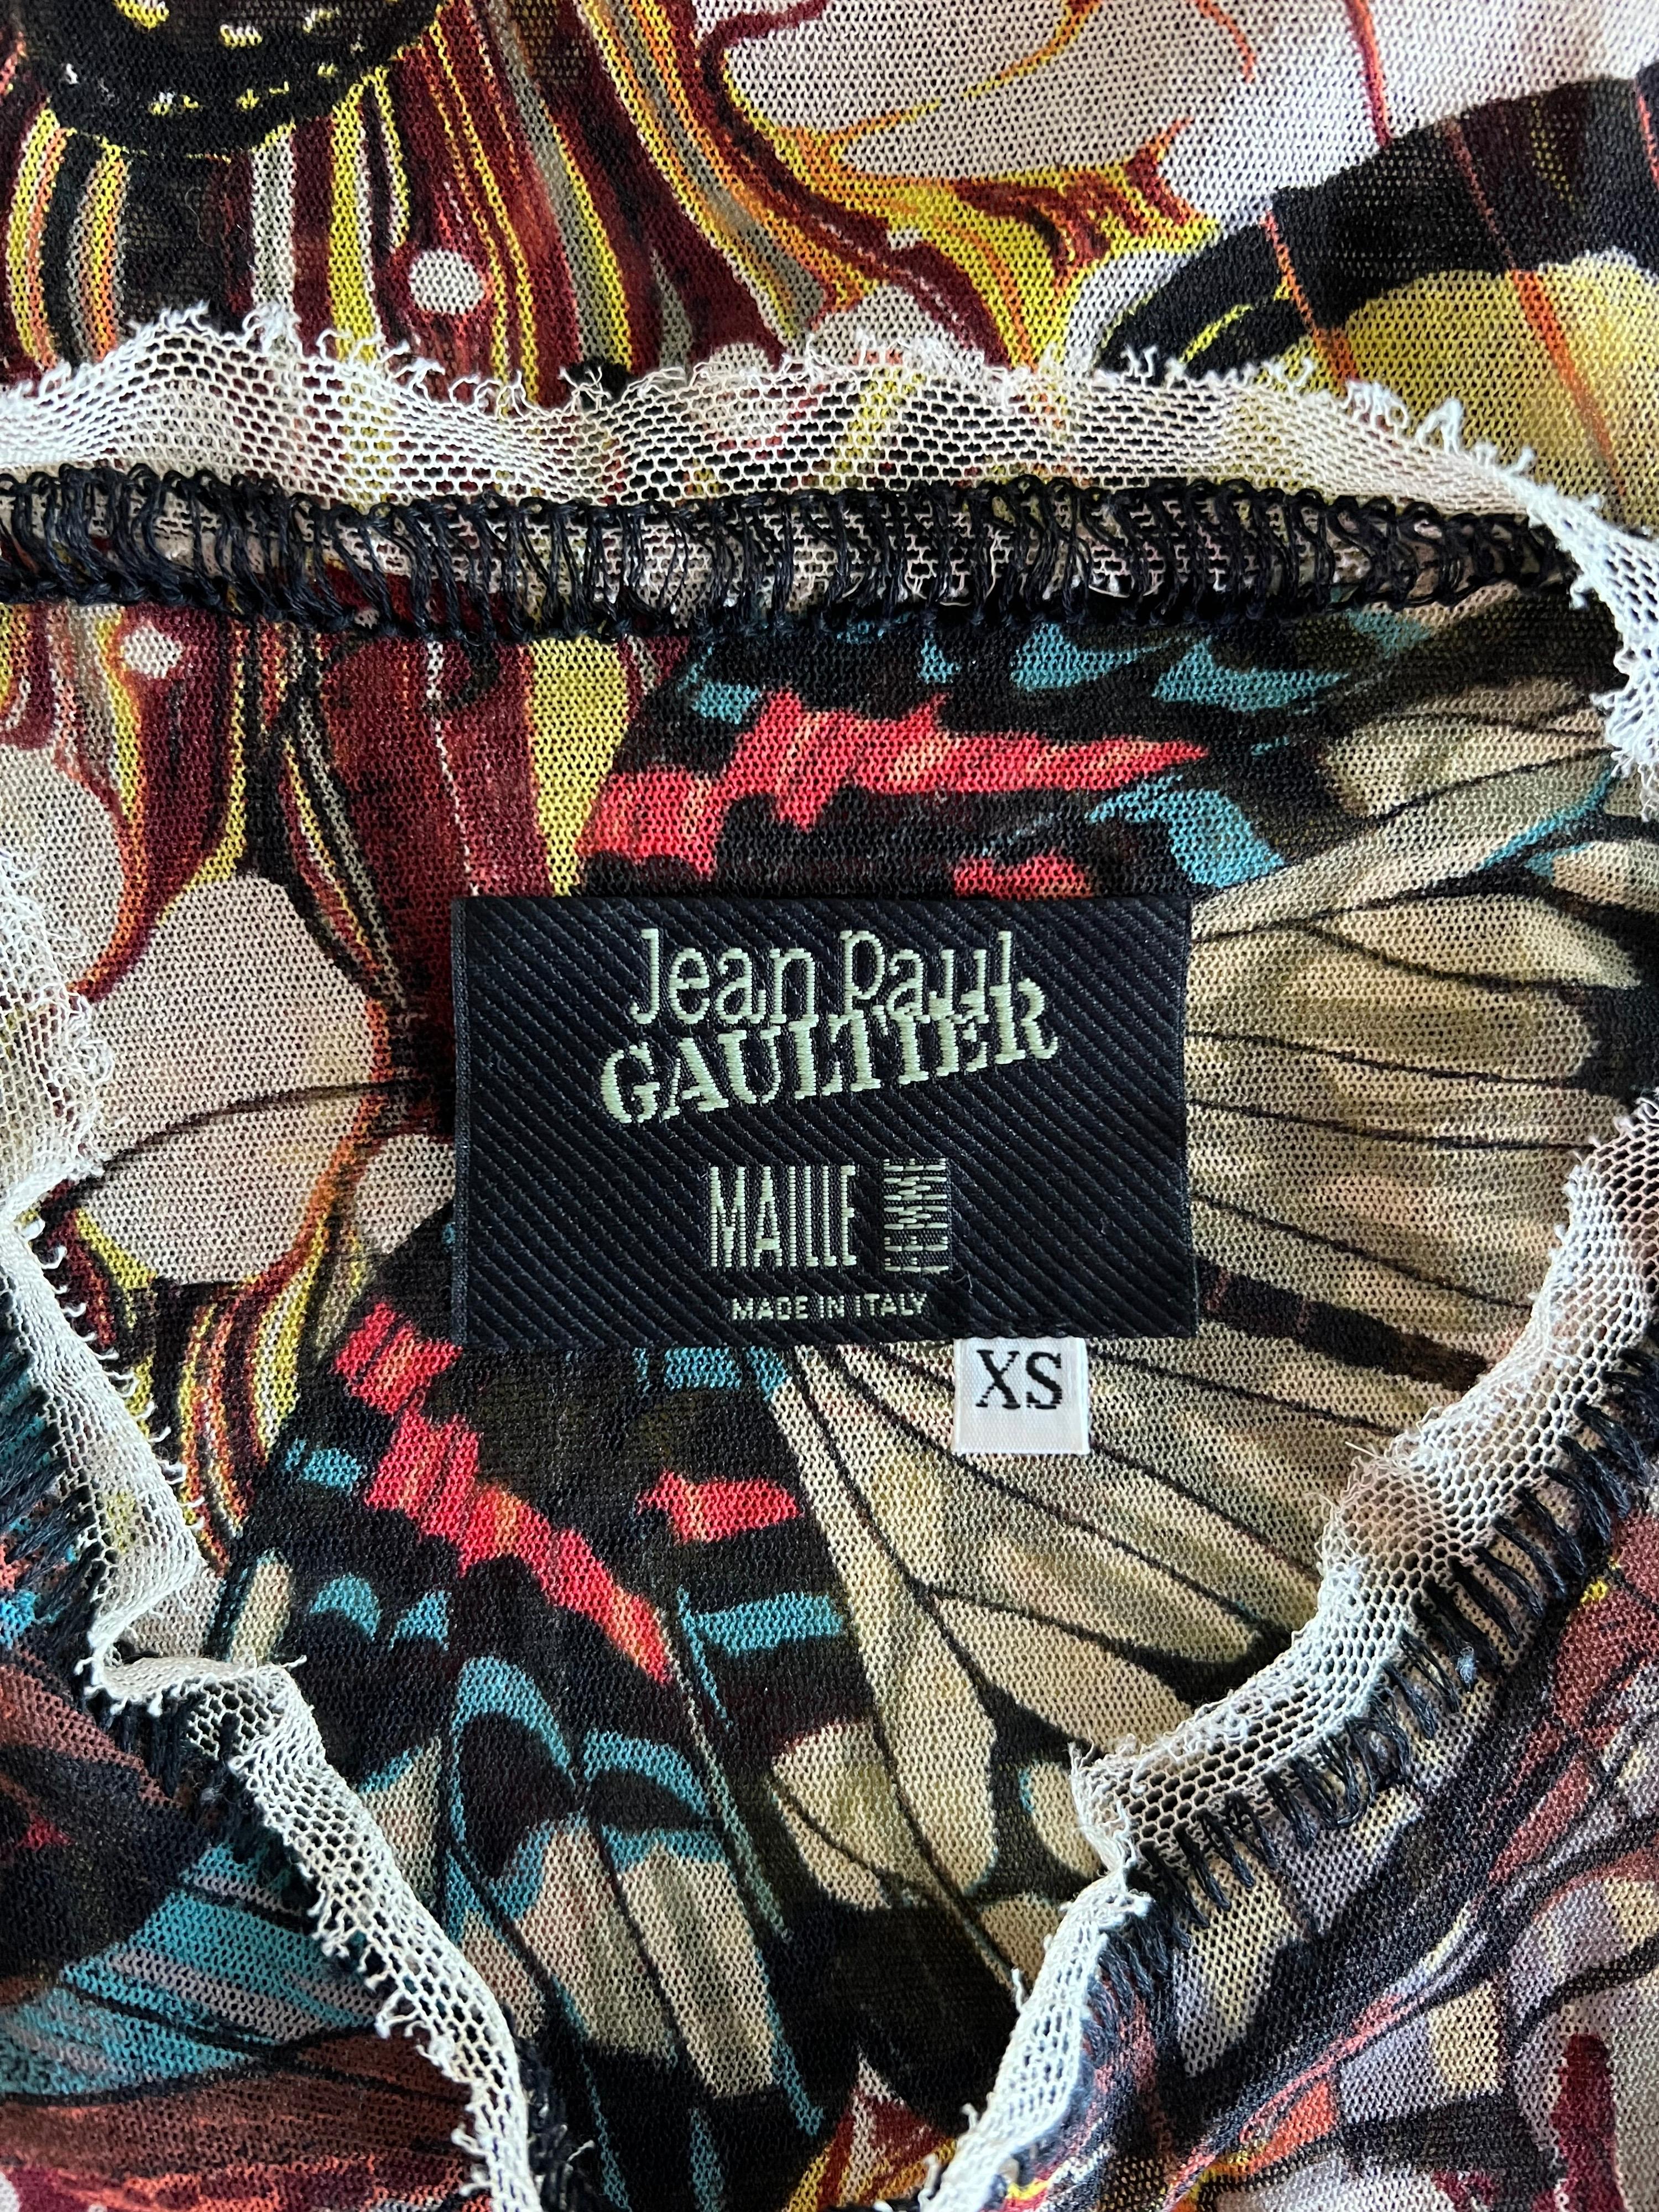 Women's or Men's Jean Paul Gaultier S/S 2003 Butterfly Print Semi-Sheer Mesh Top